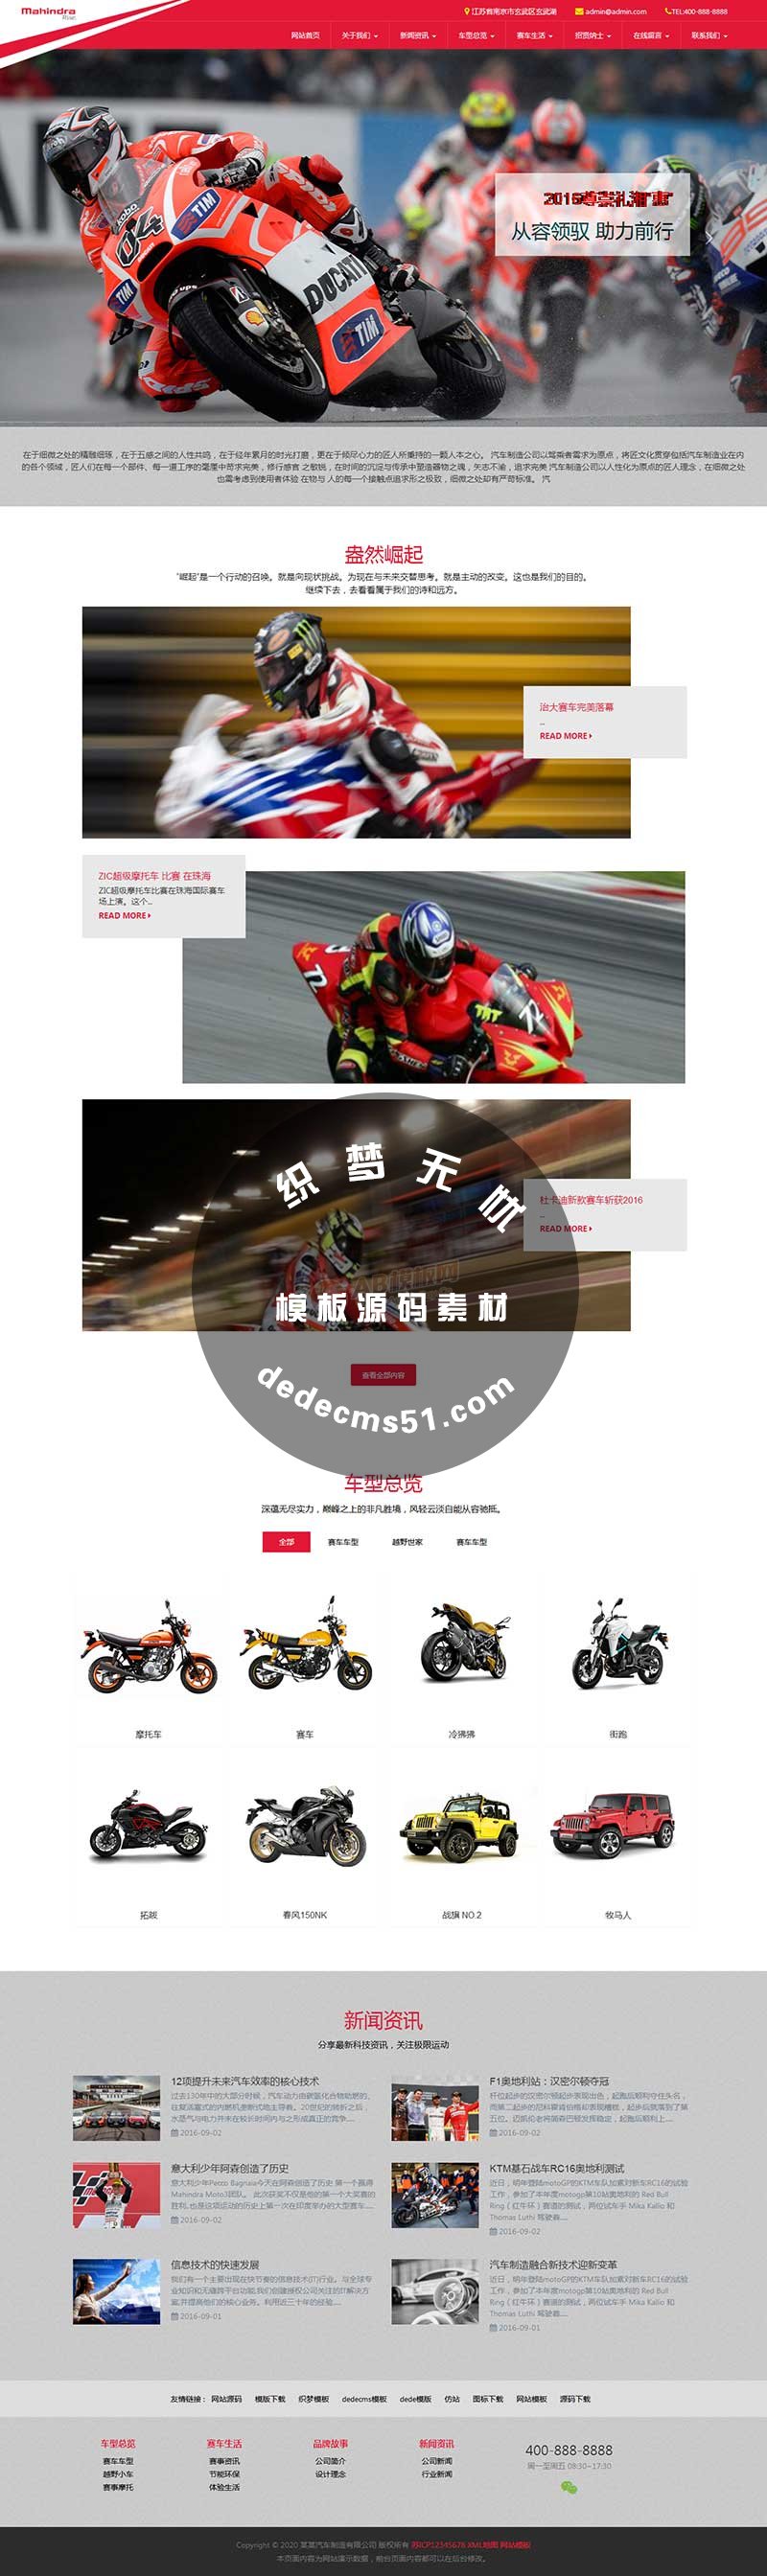 HTML5红色响应式汽车制造摩托车公司网站模板dede模板网站源码(自适应手机)